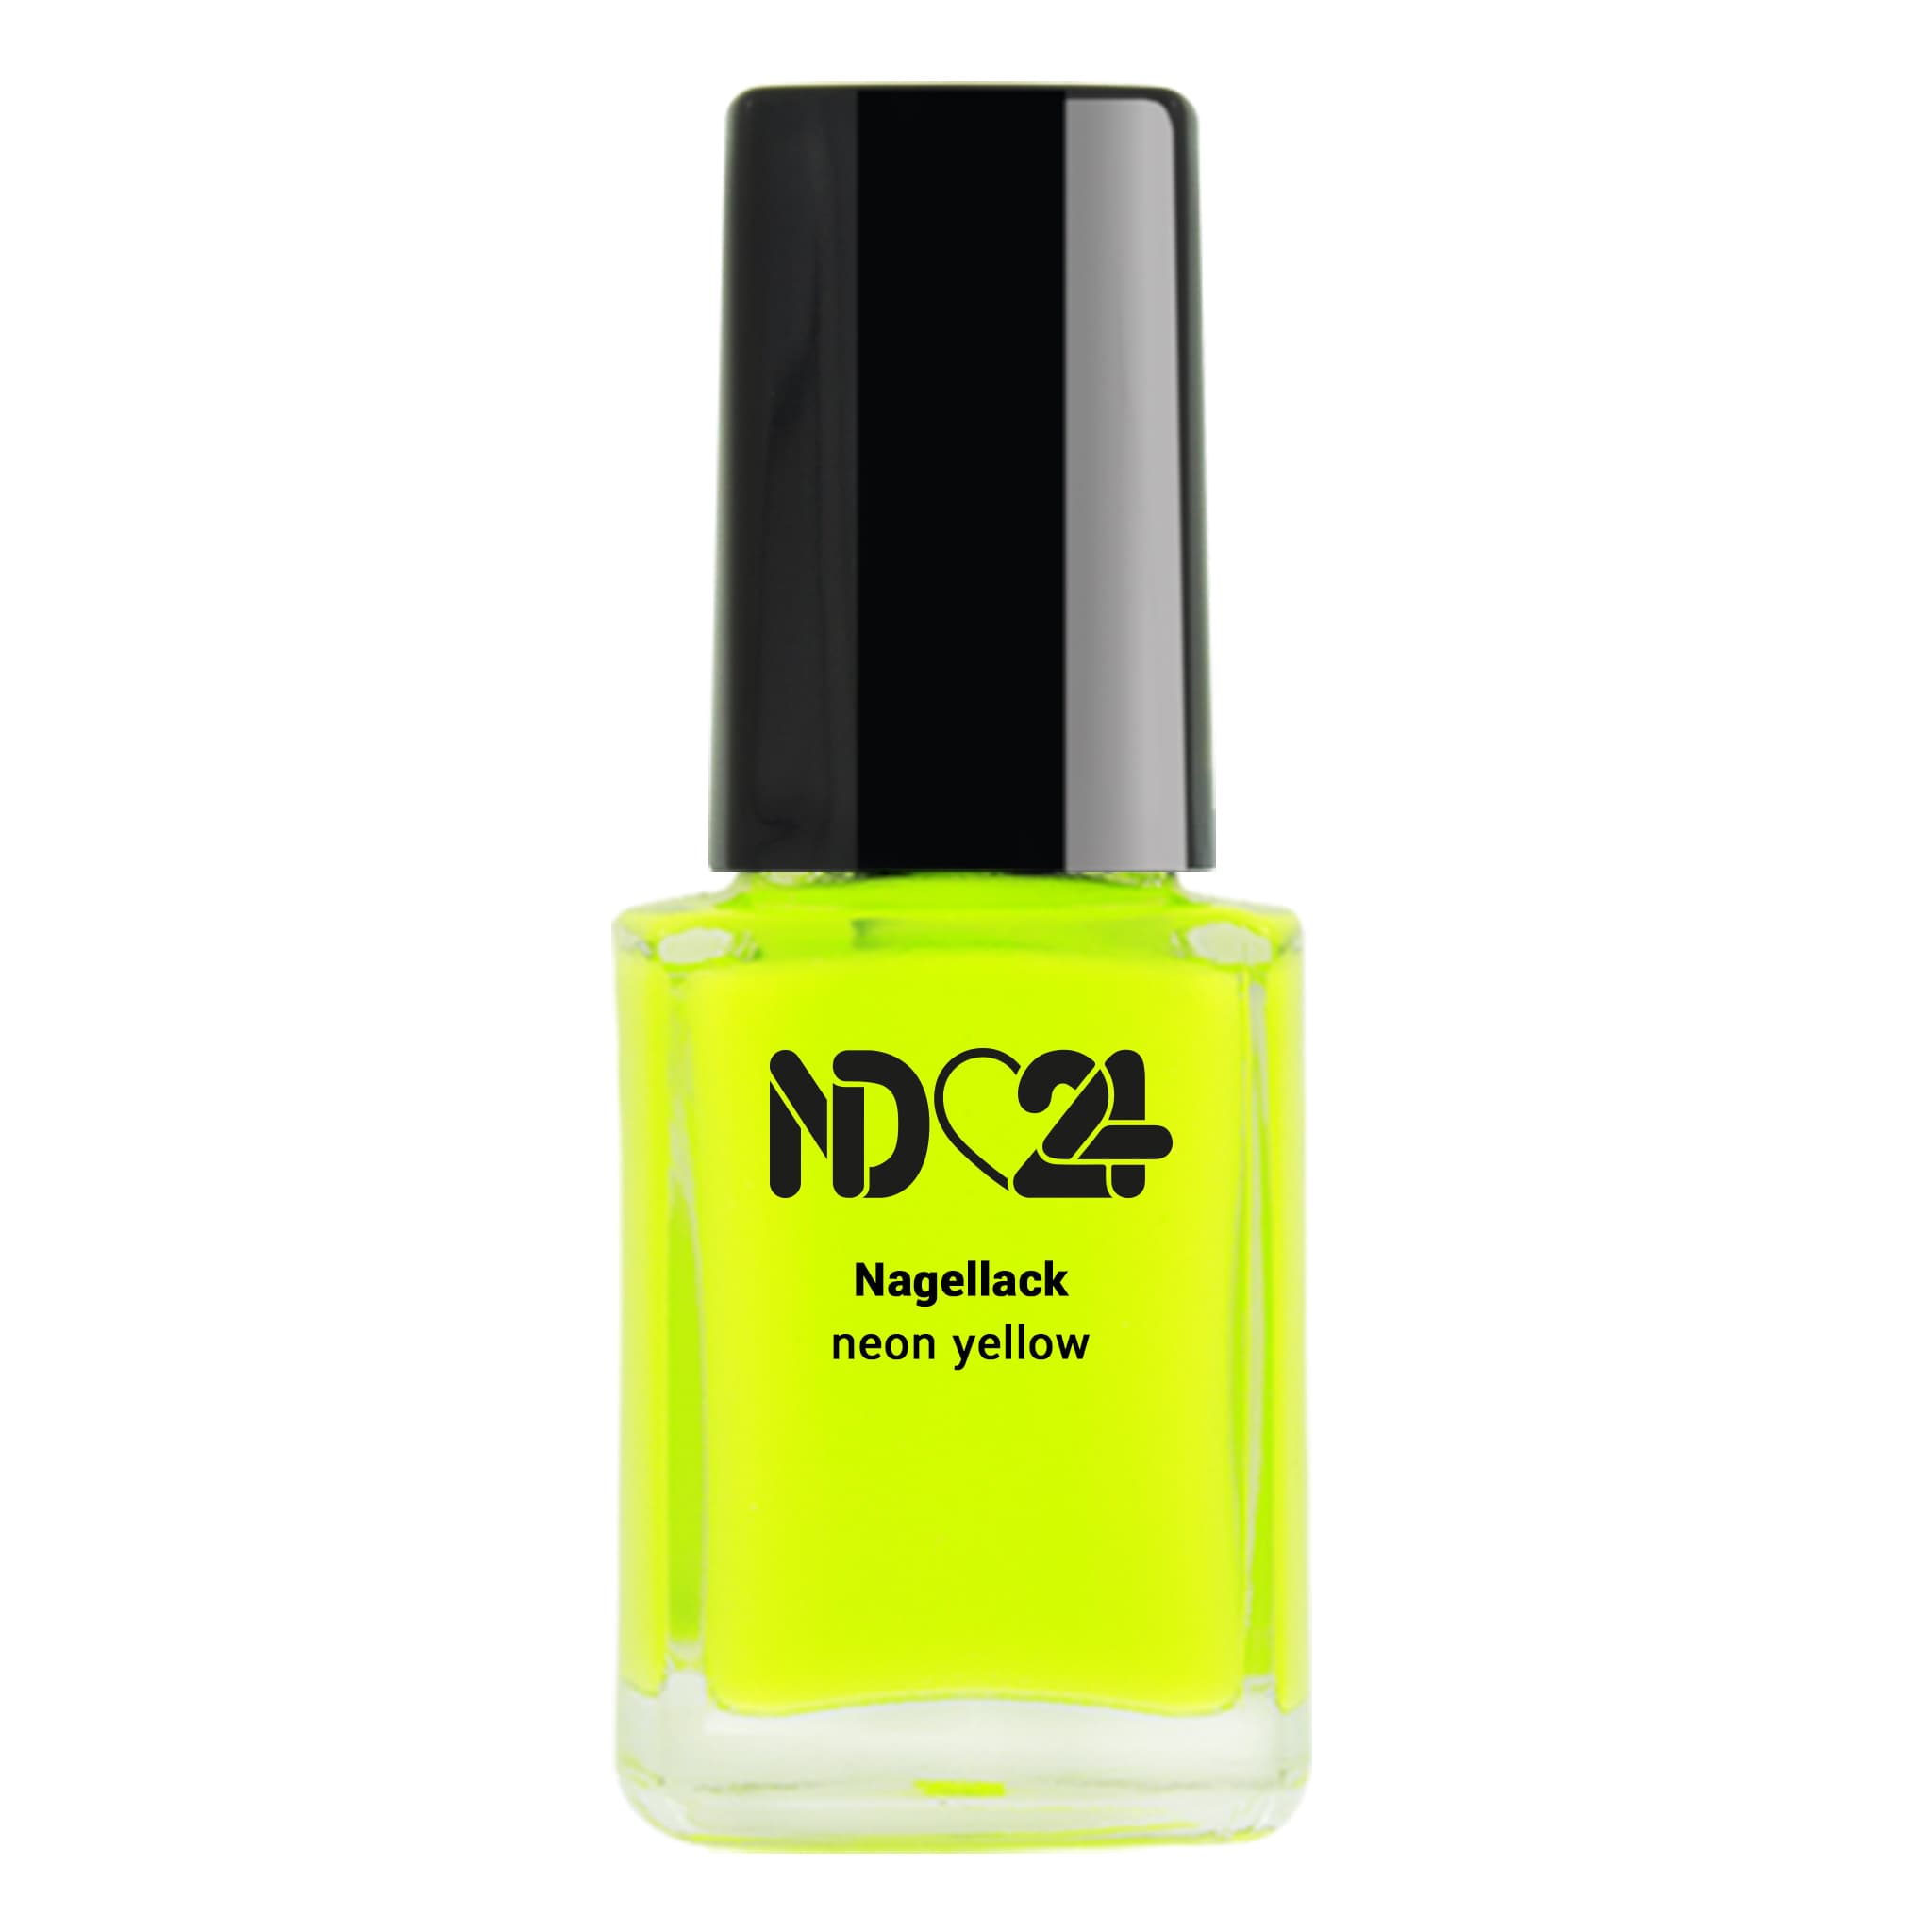 Nagellack neon 😍 günstig bei yellow NailDesign ND24 bestellen